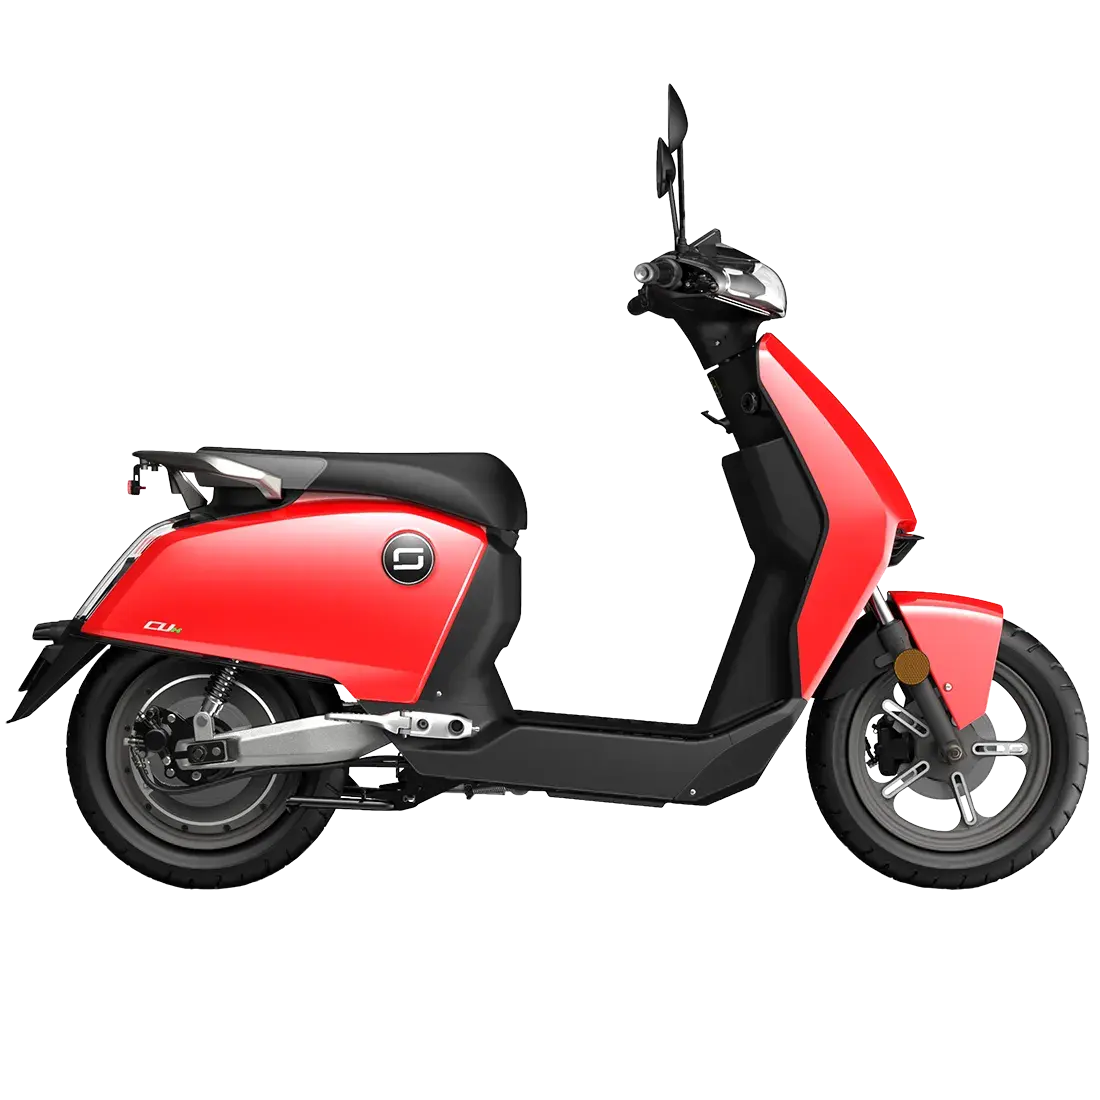 CU Mini scooter L1e Super Soco